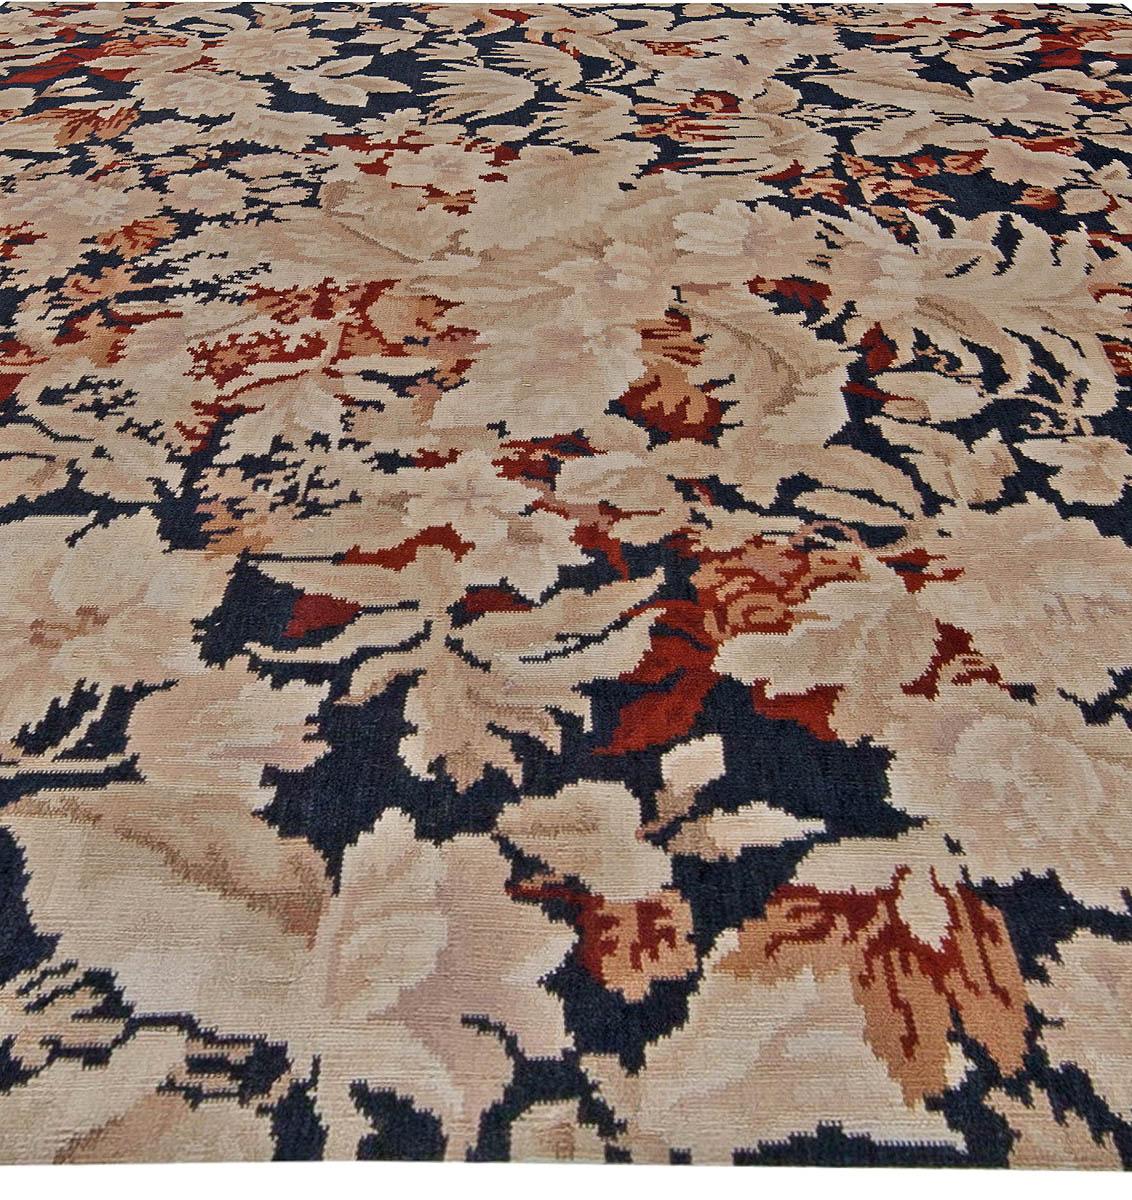 Bessarabian Floral Design Handmade Wool Rug by Doris Leslie Blau. Dimensions :
Size: 7'0